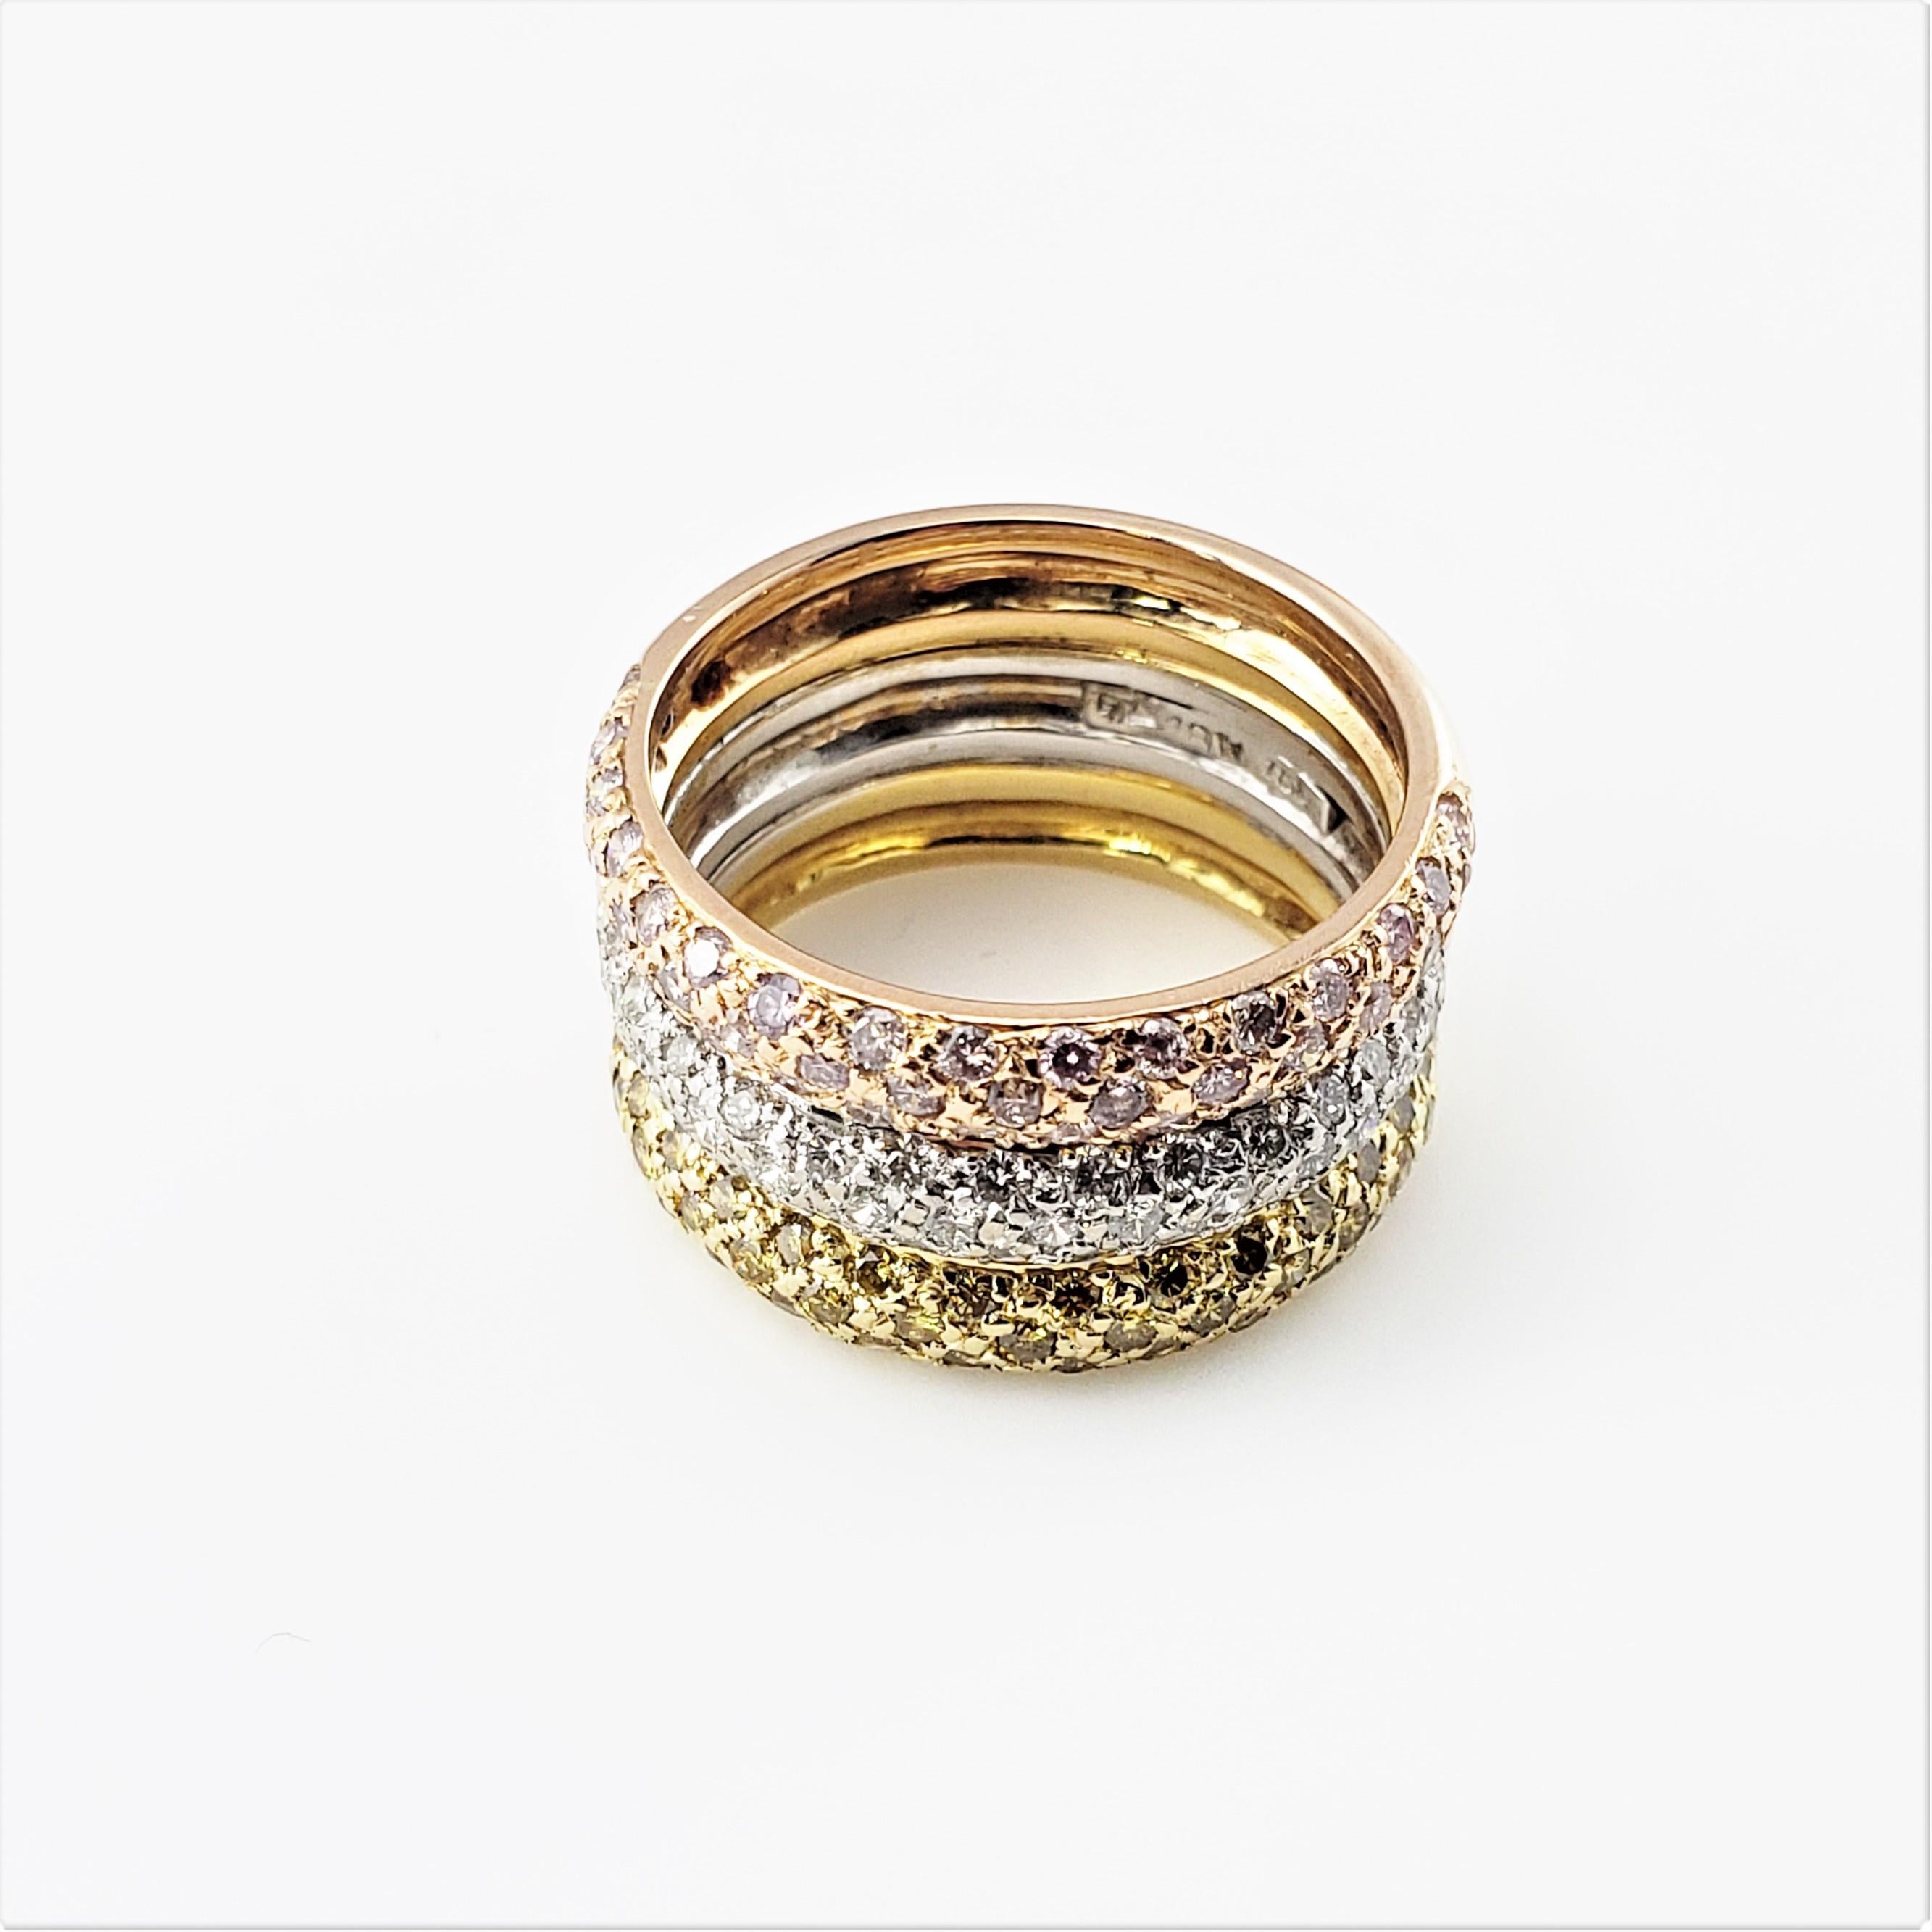 18 Karat Gelb-, Weiß- und Roségold und Diamant Dreifachband Ring Größe 6.5-

Dieser atemberaubende Ring besteht aus drei festen Bändern aus 18 Karat Rosé-, Weiß- und Gelbgold, die mit 147 runden Diamanten im Brillantschliff besetzt sind. Die